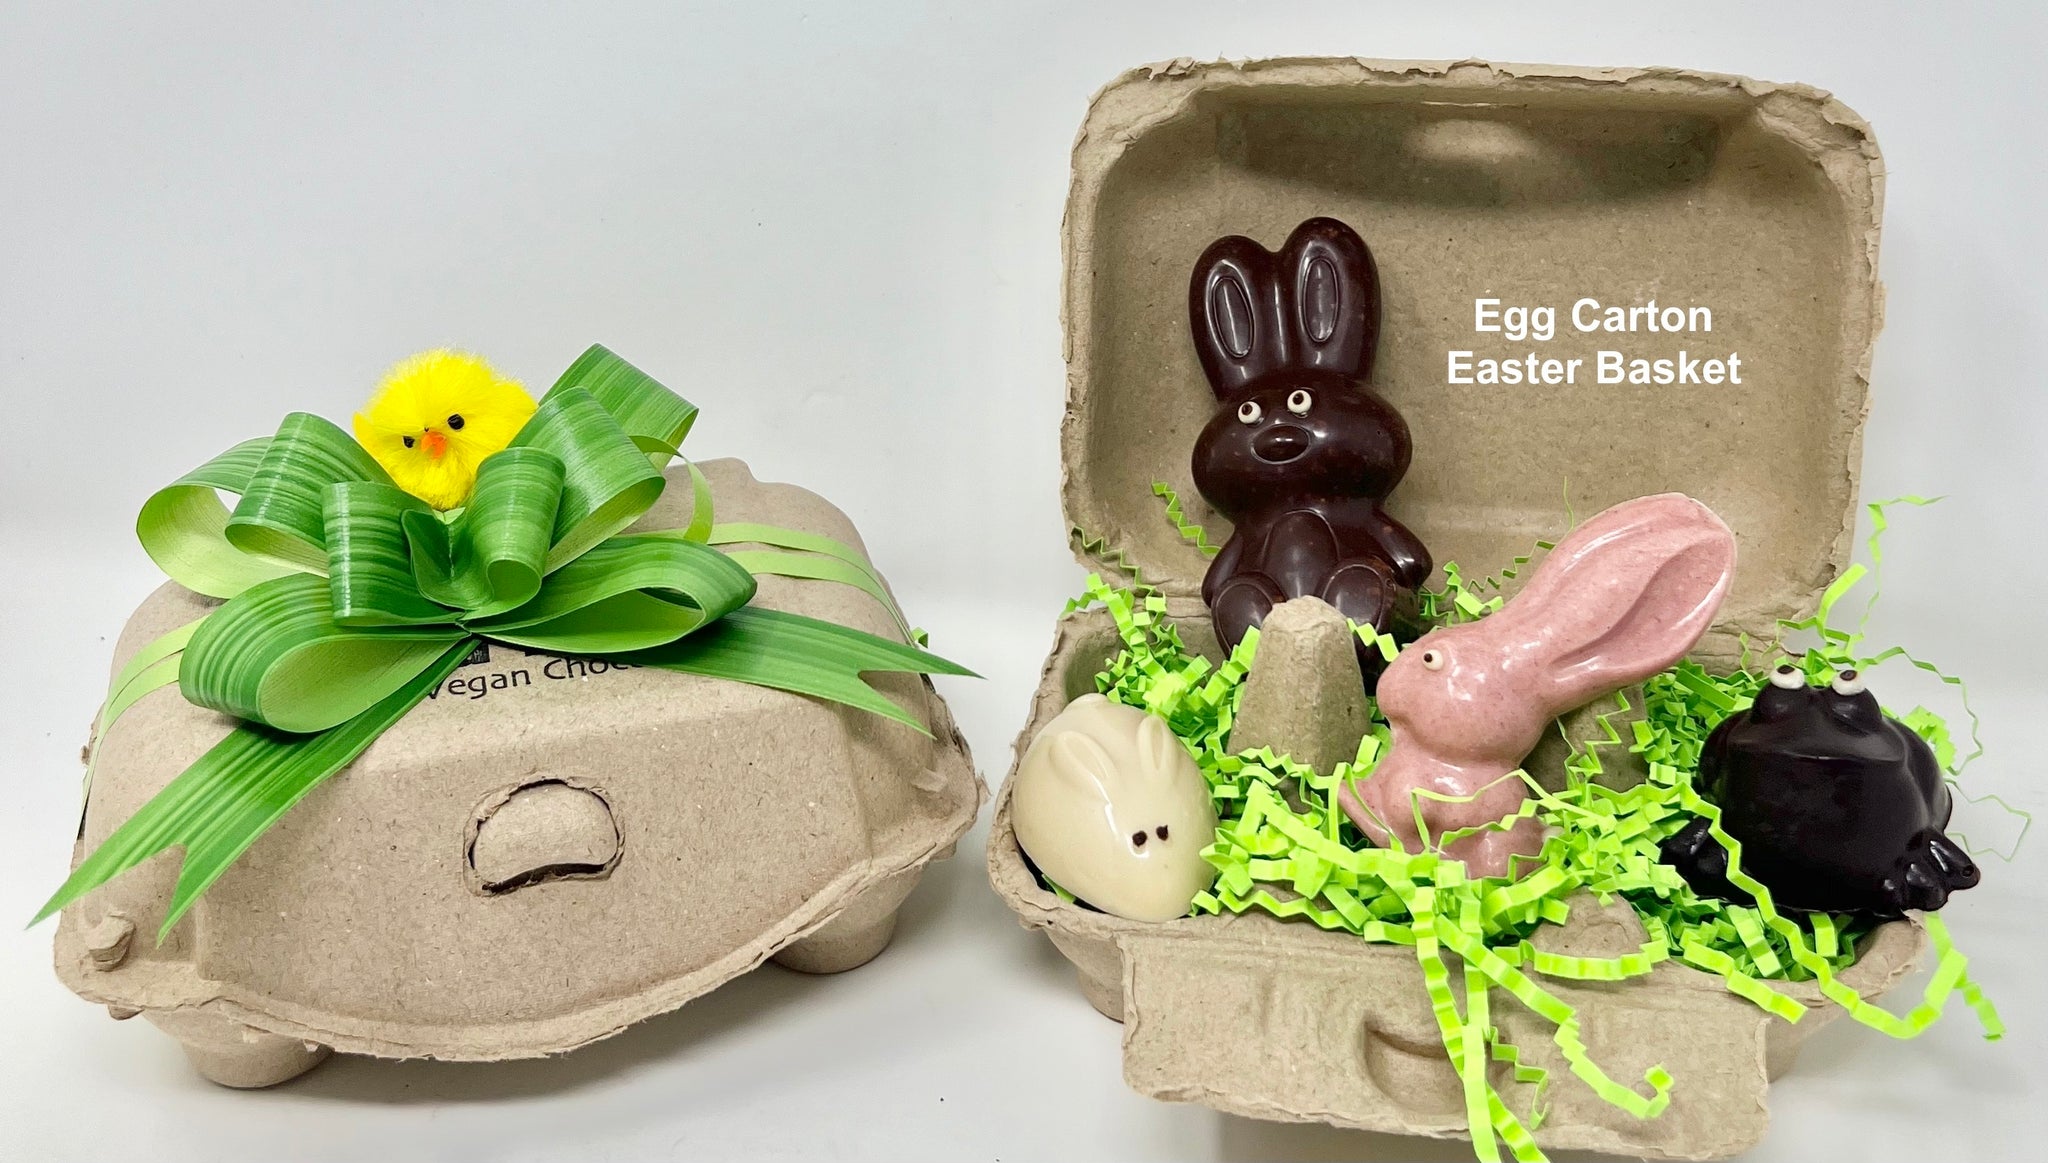 Egg Carton Easter Basket